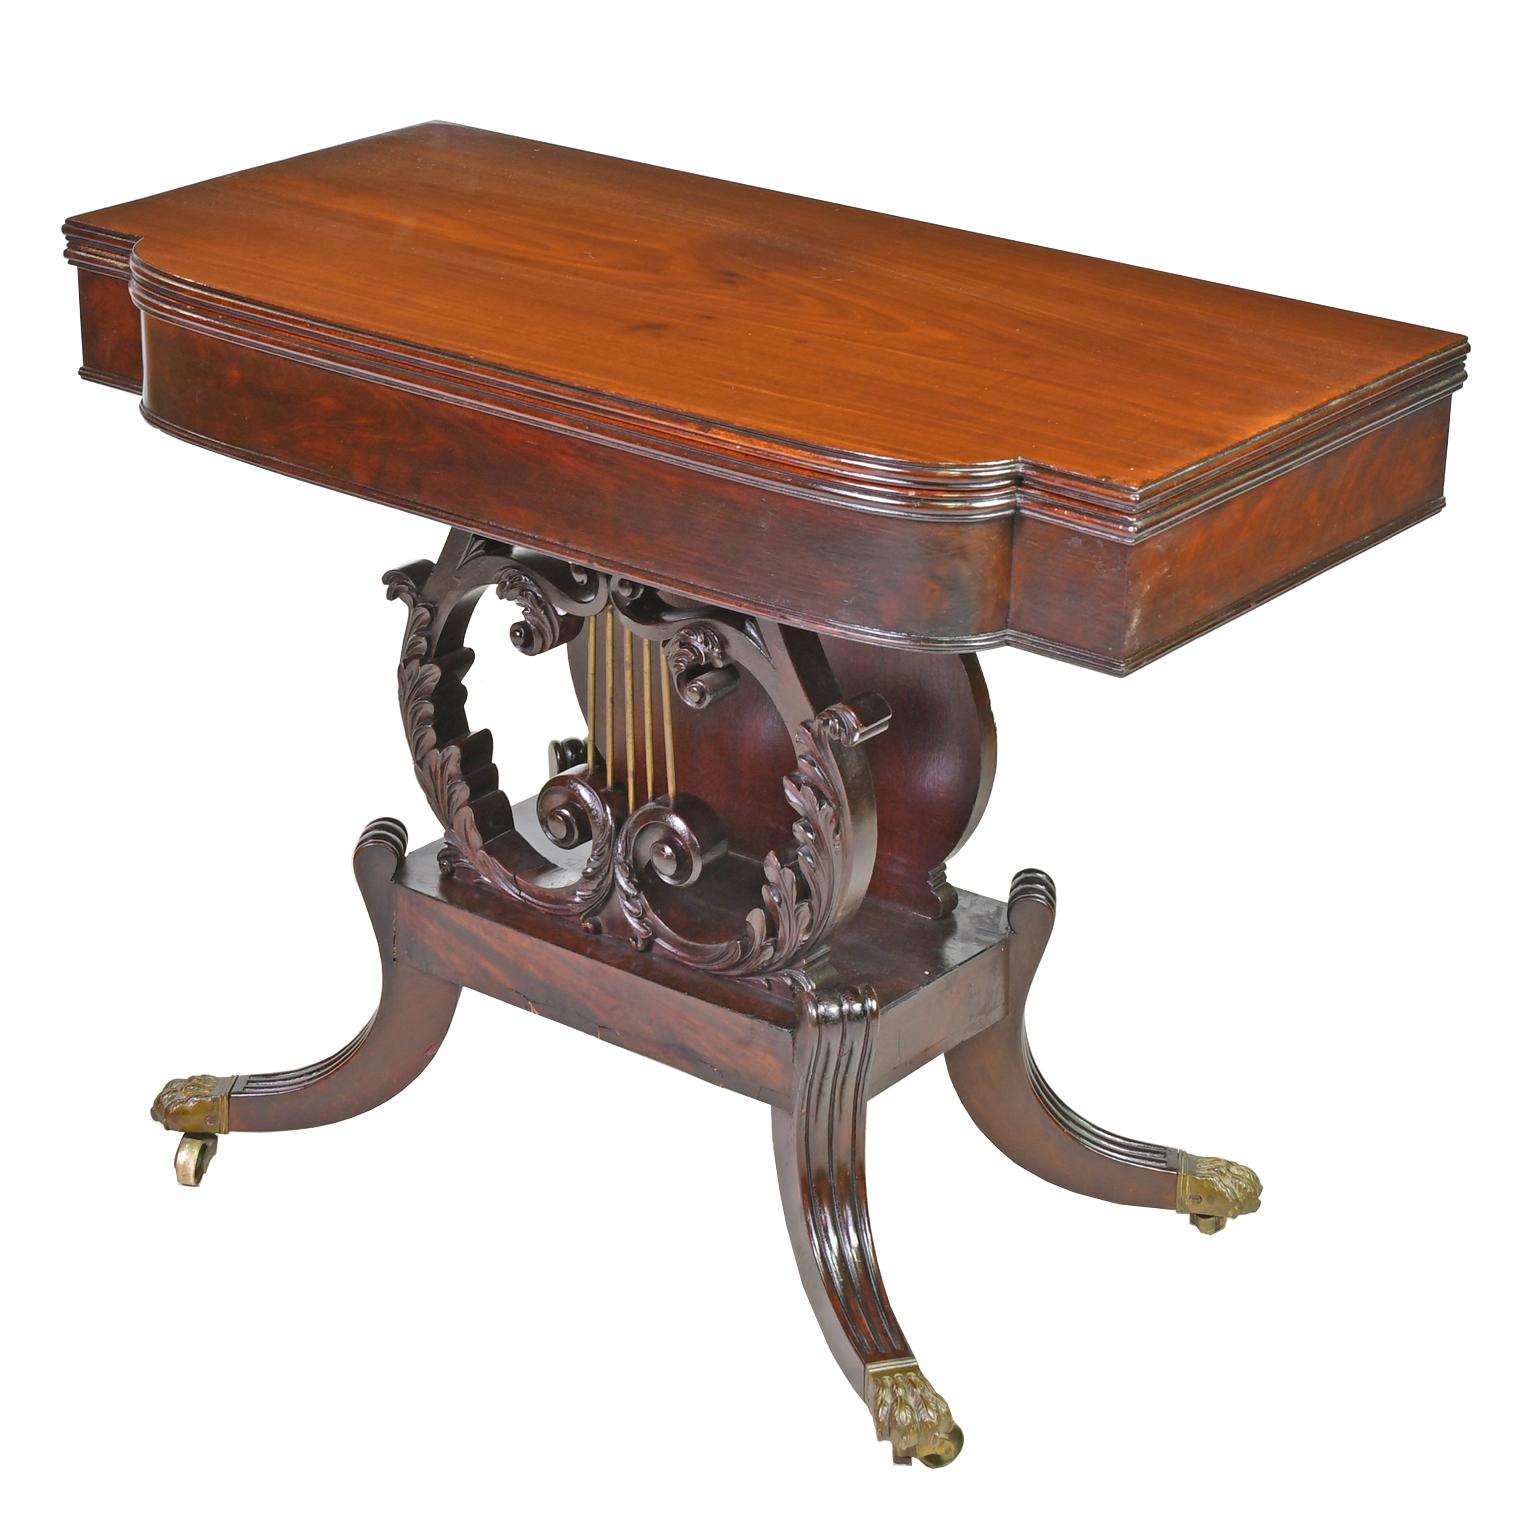 Ein sehr feiner föderaler Kartentisch, der dem bekannten Bostoner Tischler Thomas Seymour (1771-1848) zugeschrieben wird, mit Schnitzereien wahrscheinlich von Thomas Wightman (1759-1827), Boston, um 1815. Die Platte ist aus massivem Mahagoni; die